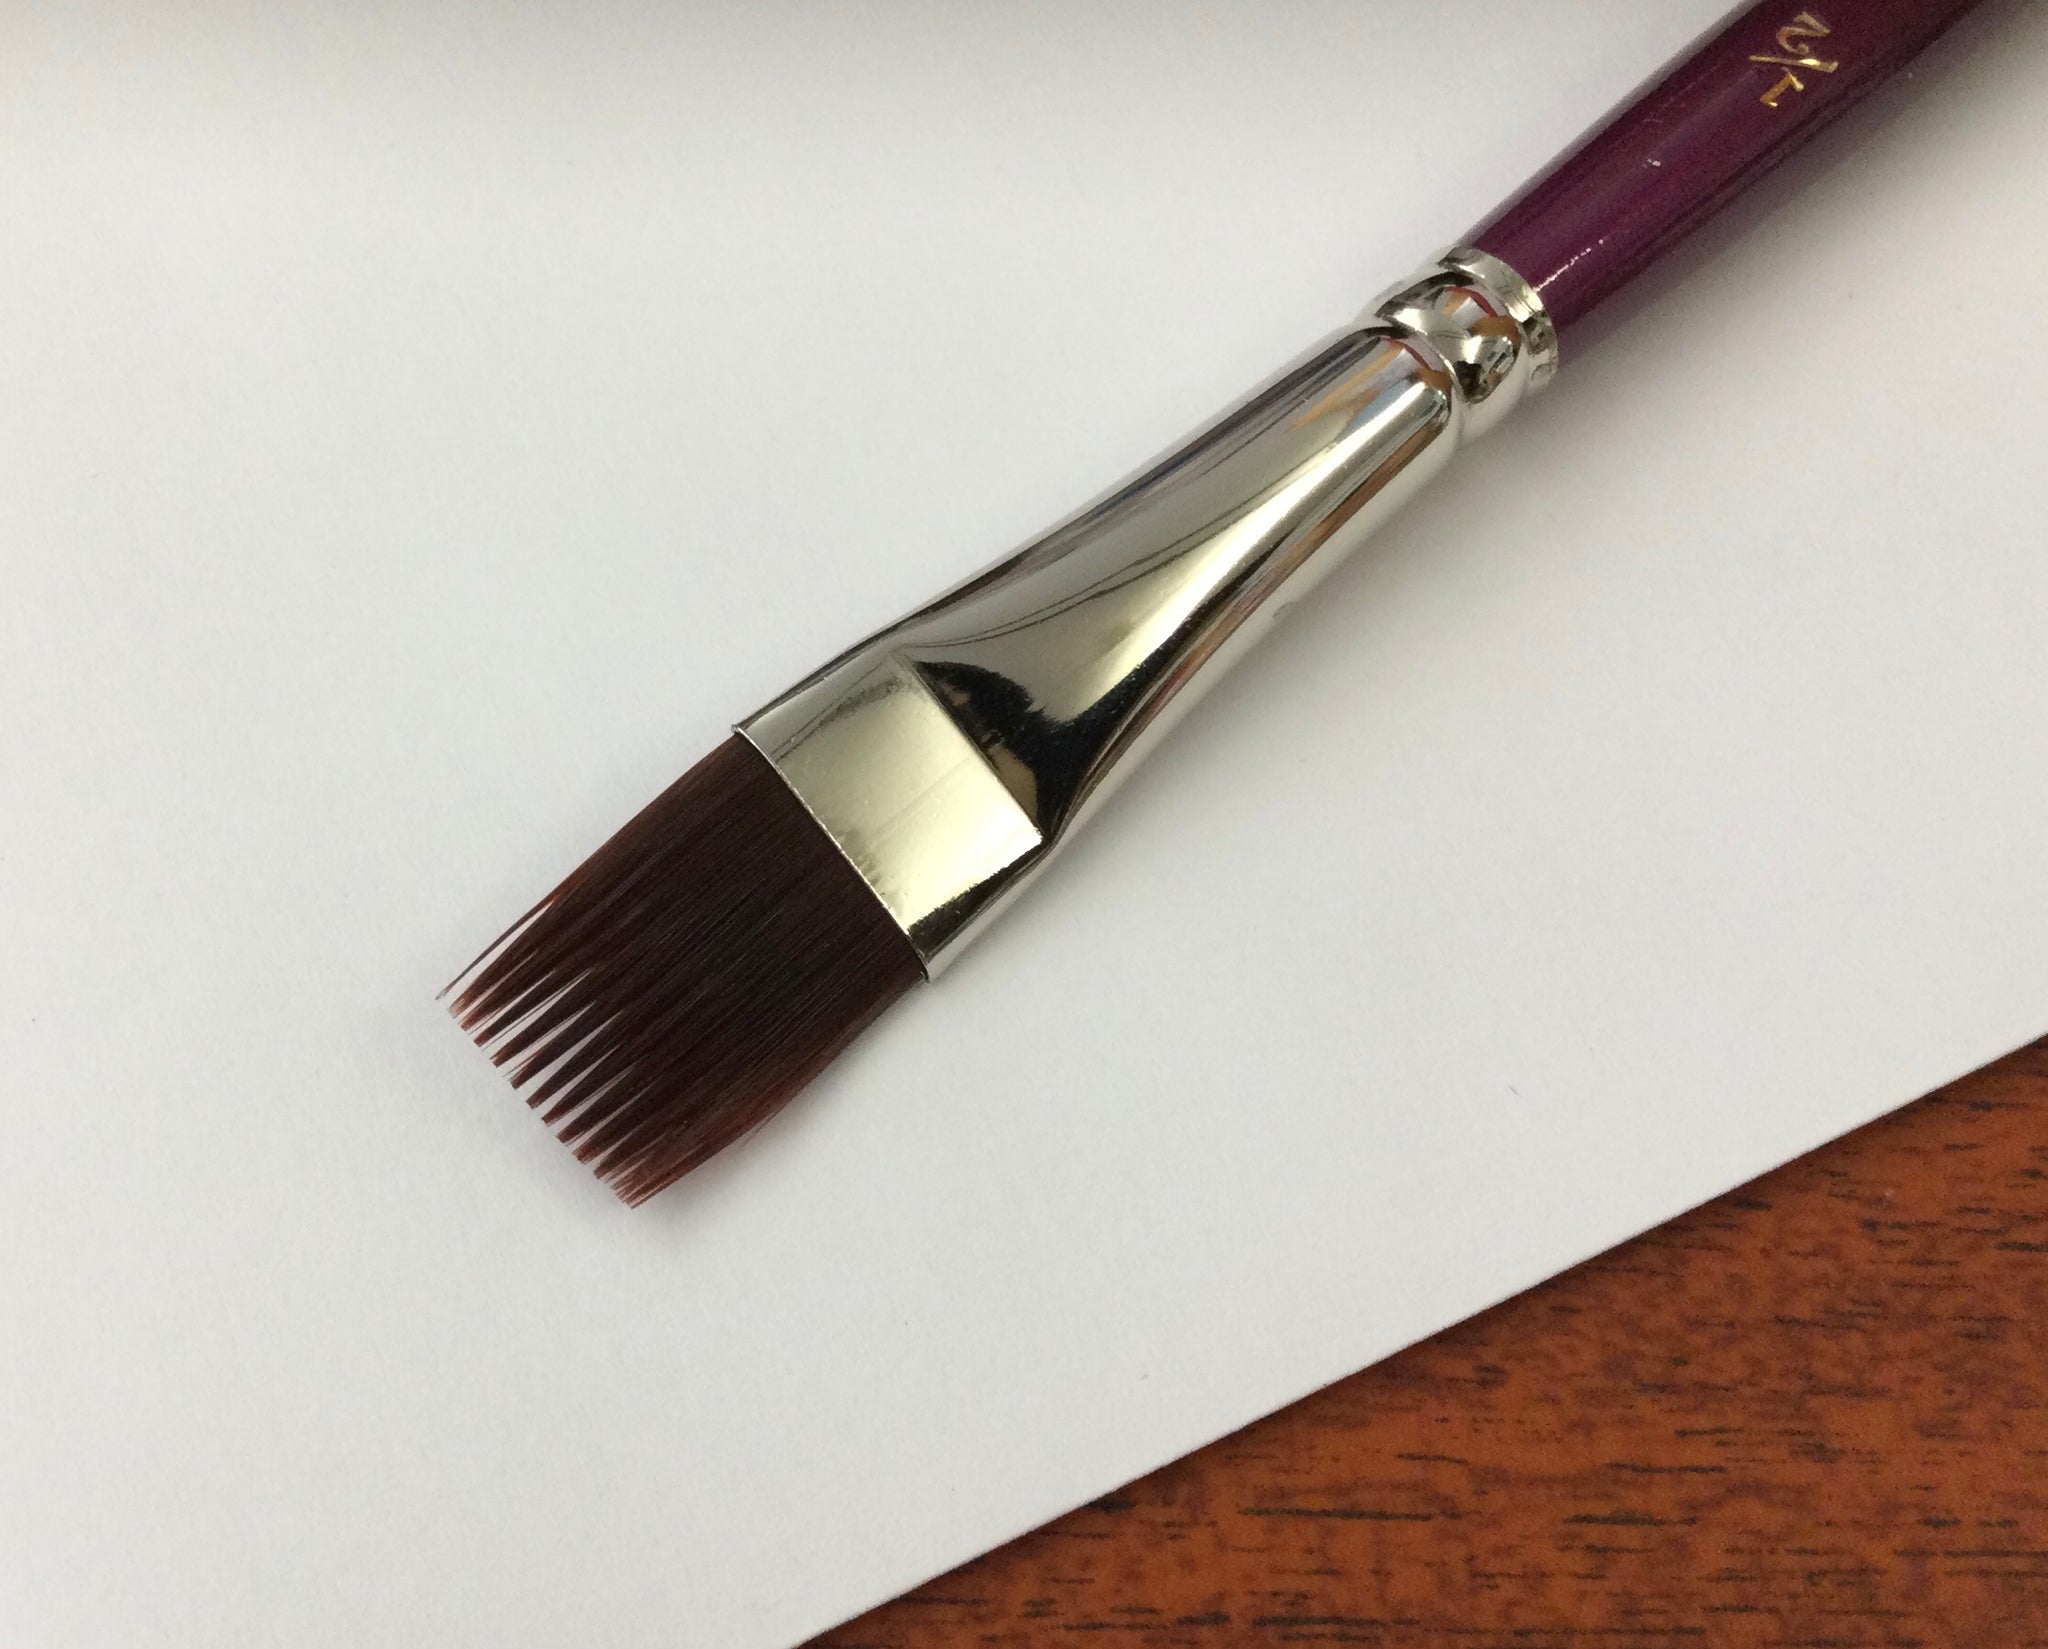 HJ Interlon #665 square comb brush 1/2 inches